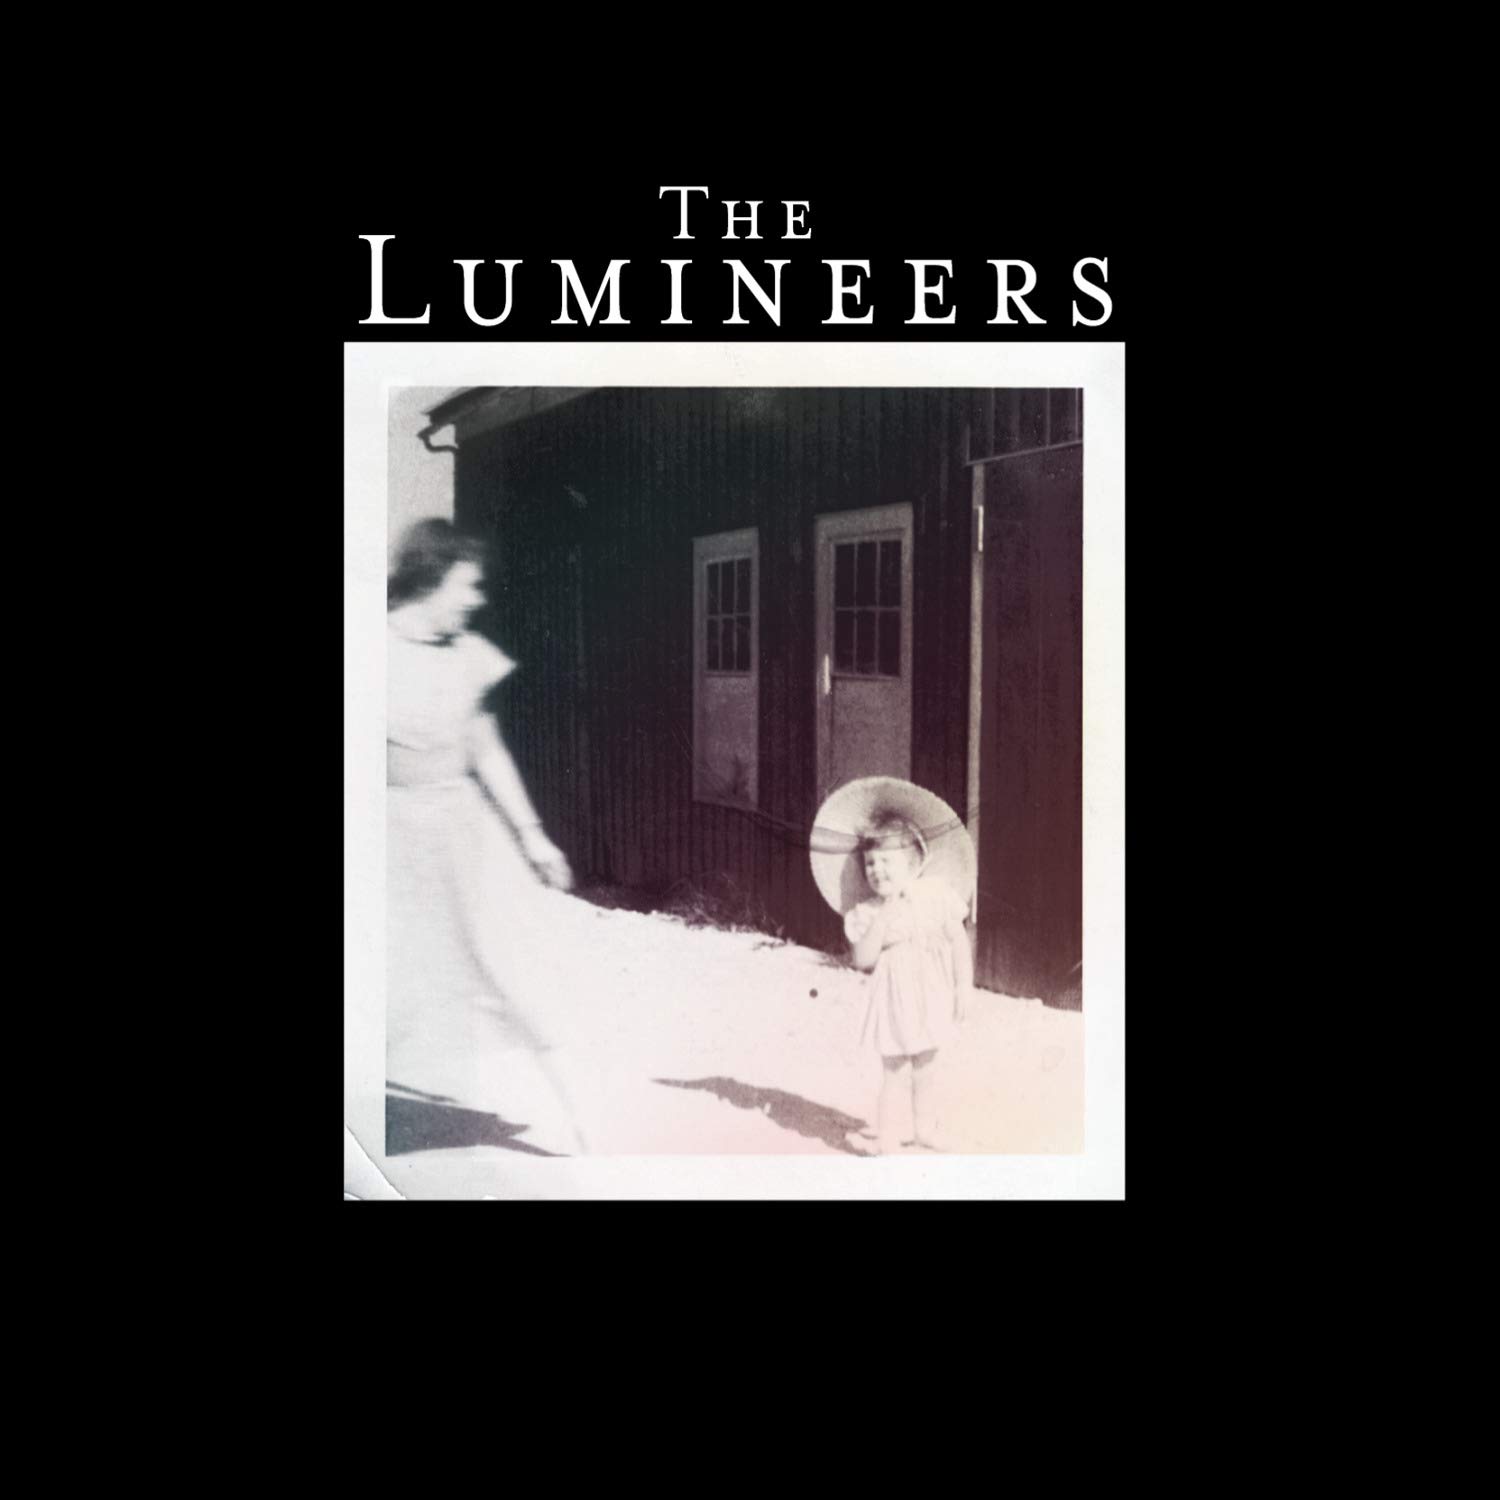 Lumineers-The-Lumineers-vinyl-LP-record-album-front